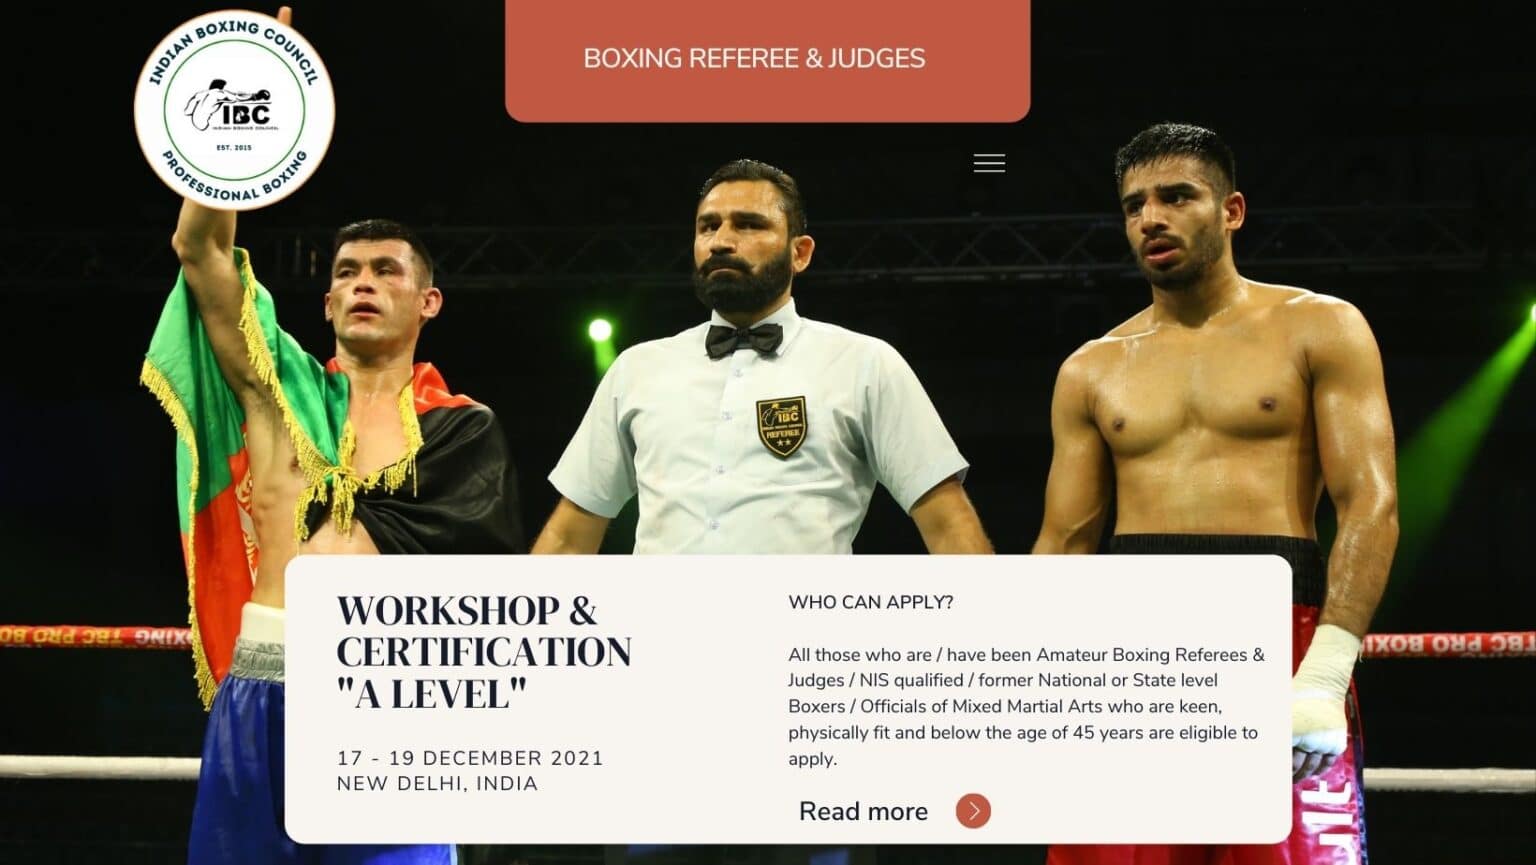 IBC Boxing Officials Referee & Judges Workshop & Seminar - New Delhi